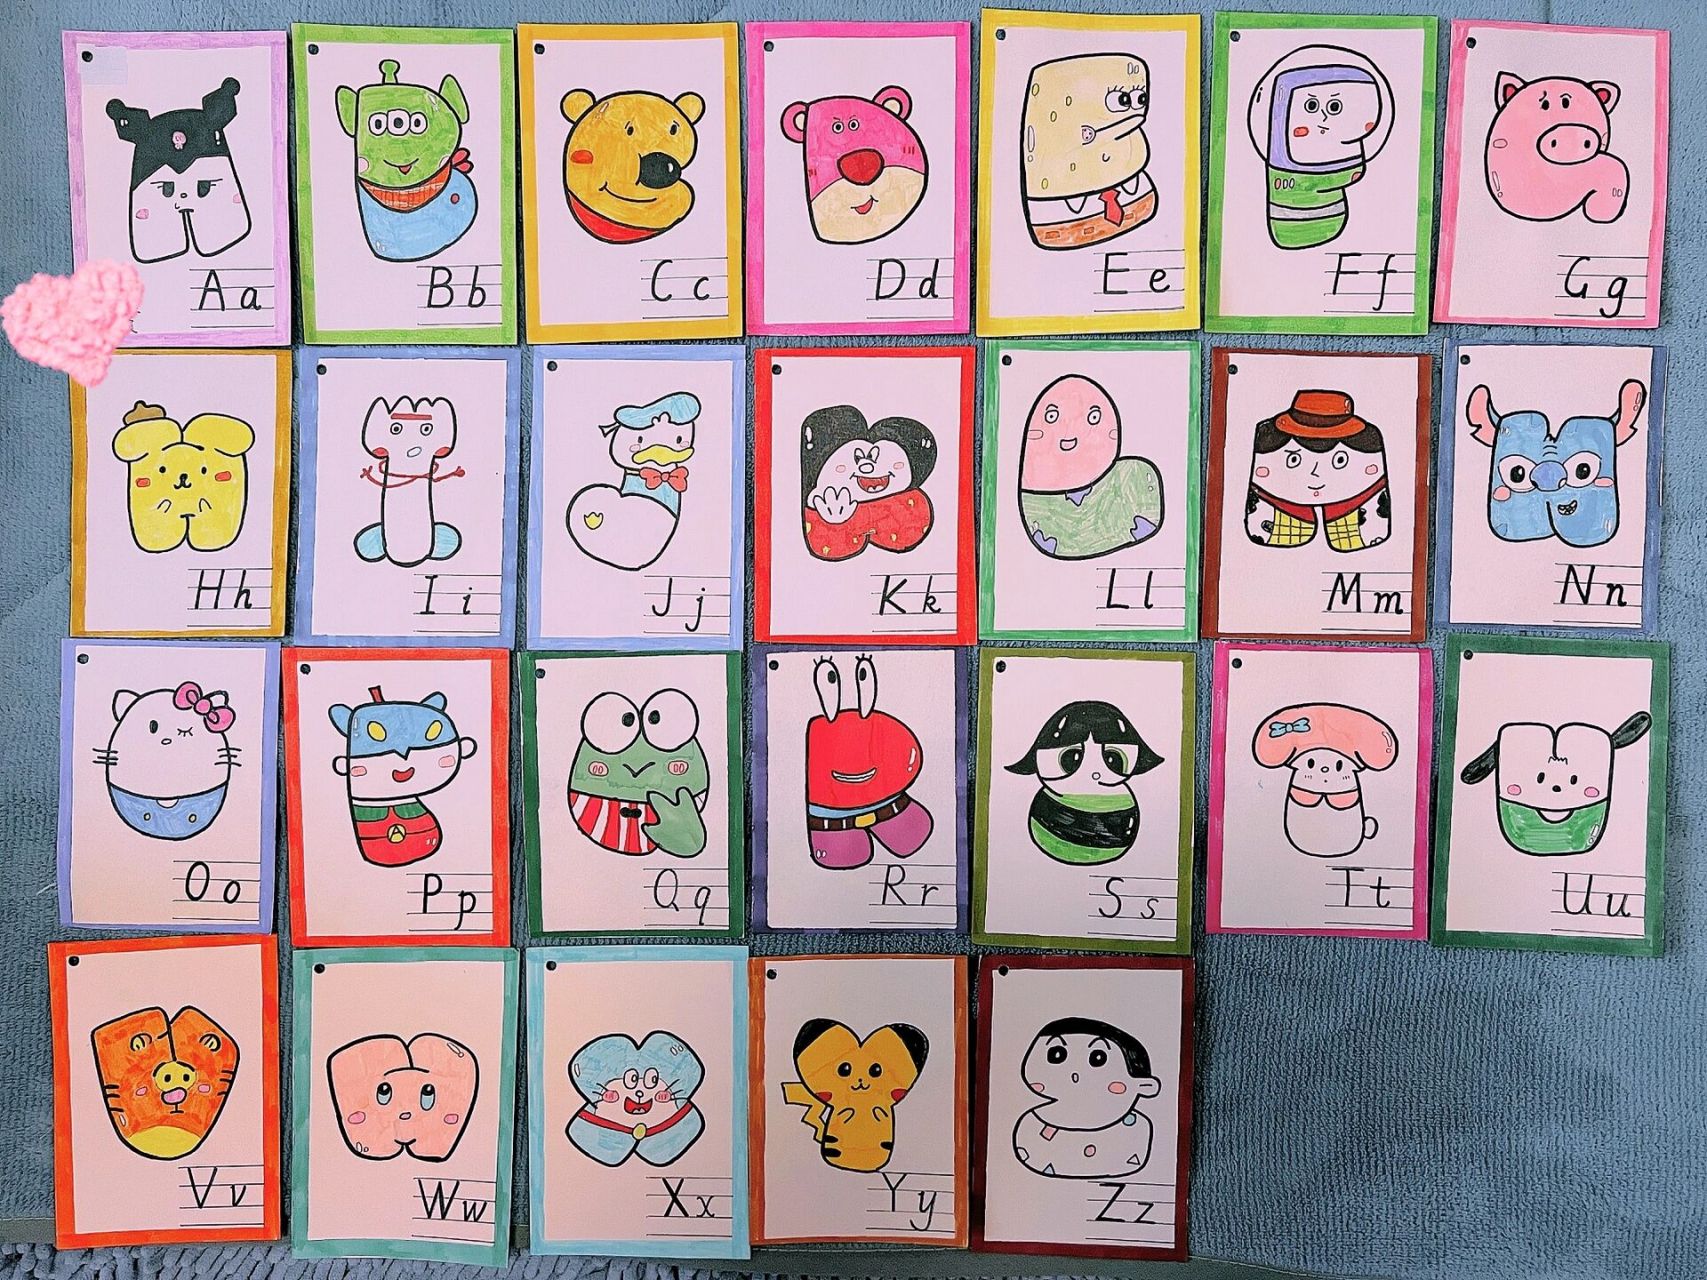 三年级作业:个性26个字母卡 在网上借鉴的图片,超级可爱